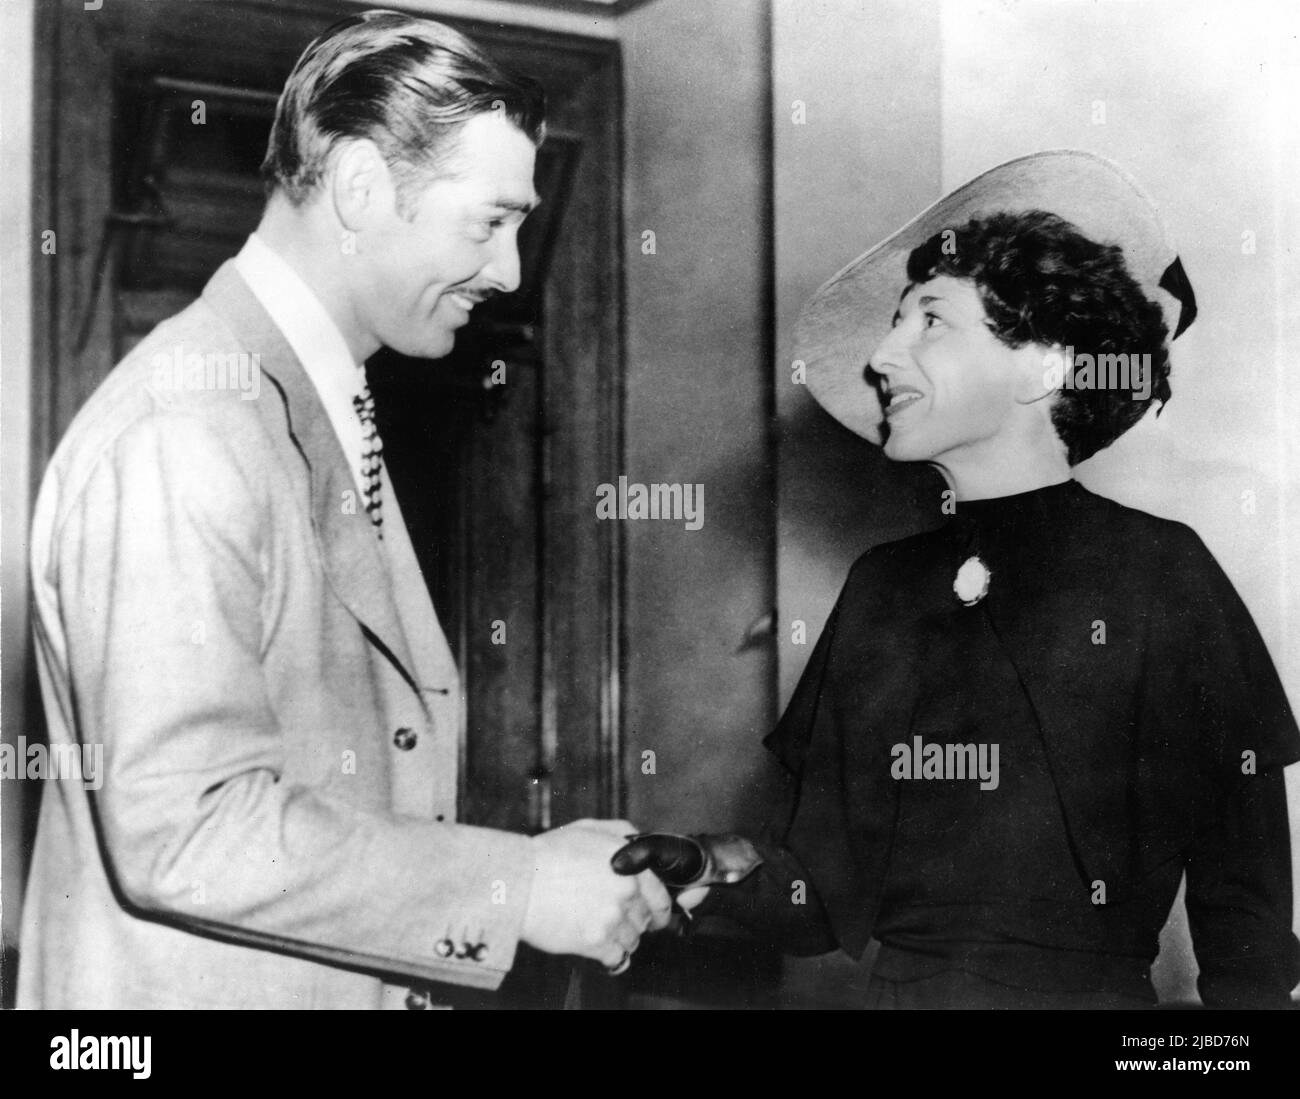 CLARK GABLE nell'aprile 1937 incontra il suo vecchio innamorato FRANZ DORFLER / DOERFLER in un Los Angeles Courtroom quando è apparsa come testimone per suo conto quando è stato accusato falsamente di essere il padre della figlia di 13 anni della donna inglese Violet Wells Norton quando lui Era presumibilmente in Inghilterra che viveva sotto il nome di Frank Billings nel 1922. Foto Stock